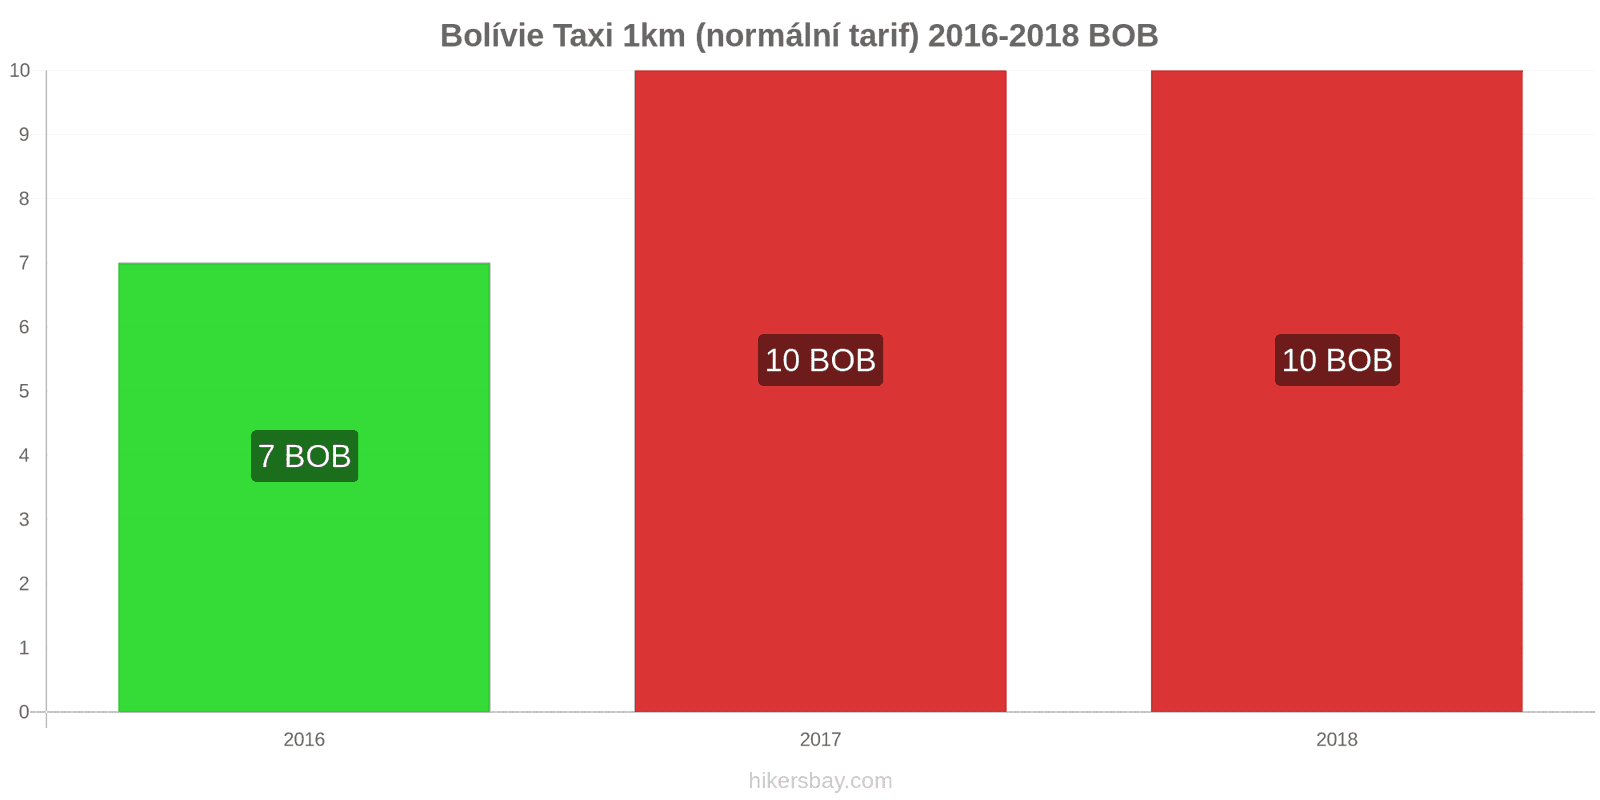 Bolívie změny cen Taxi 1km (normální tarif) hikersbay.com